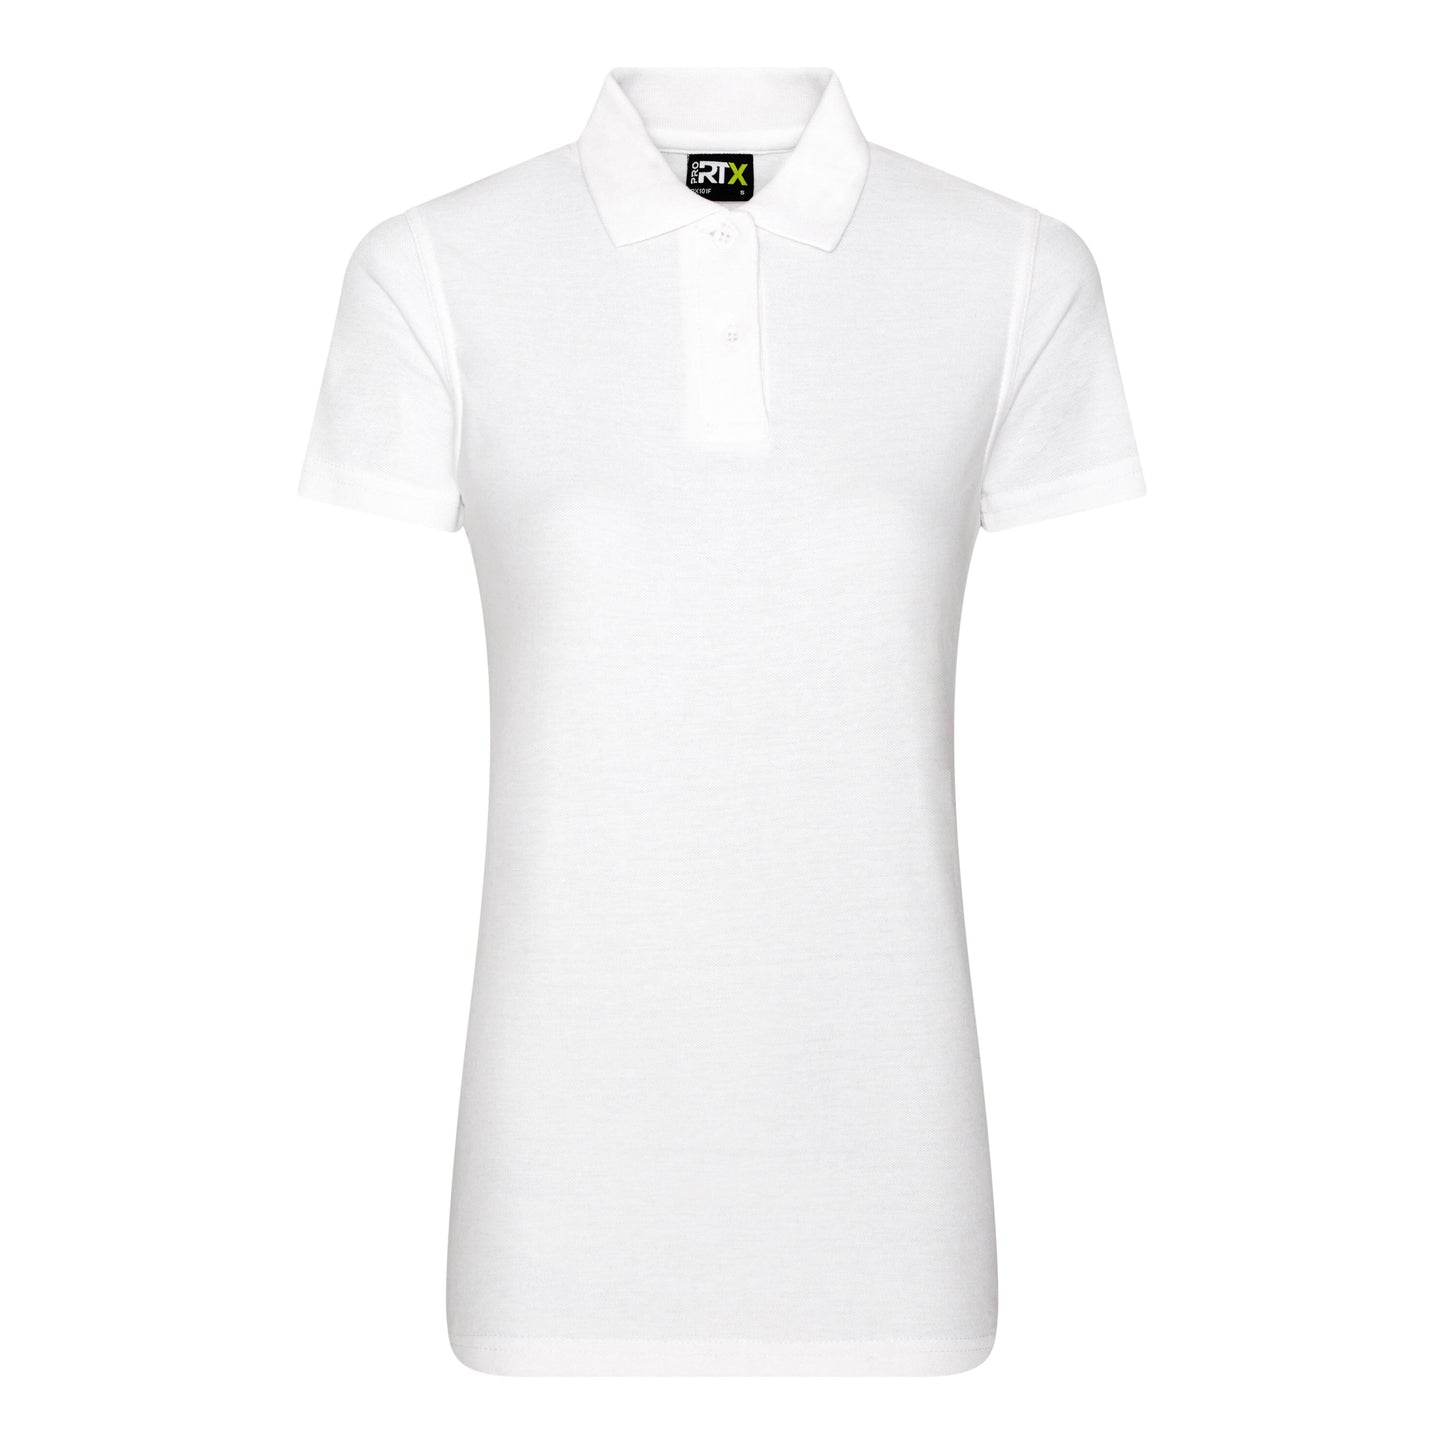 Ladies Cotton Polo Shirt